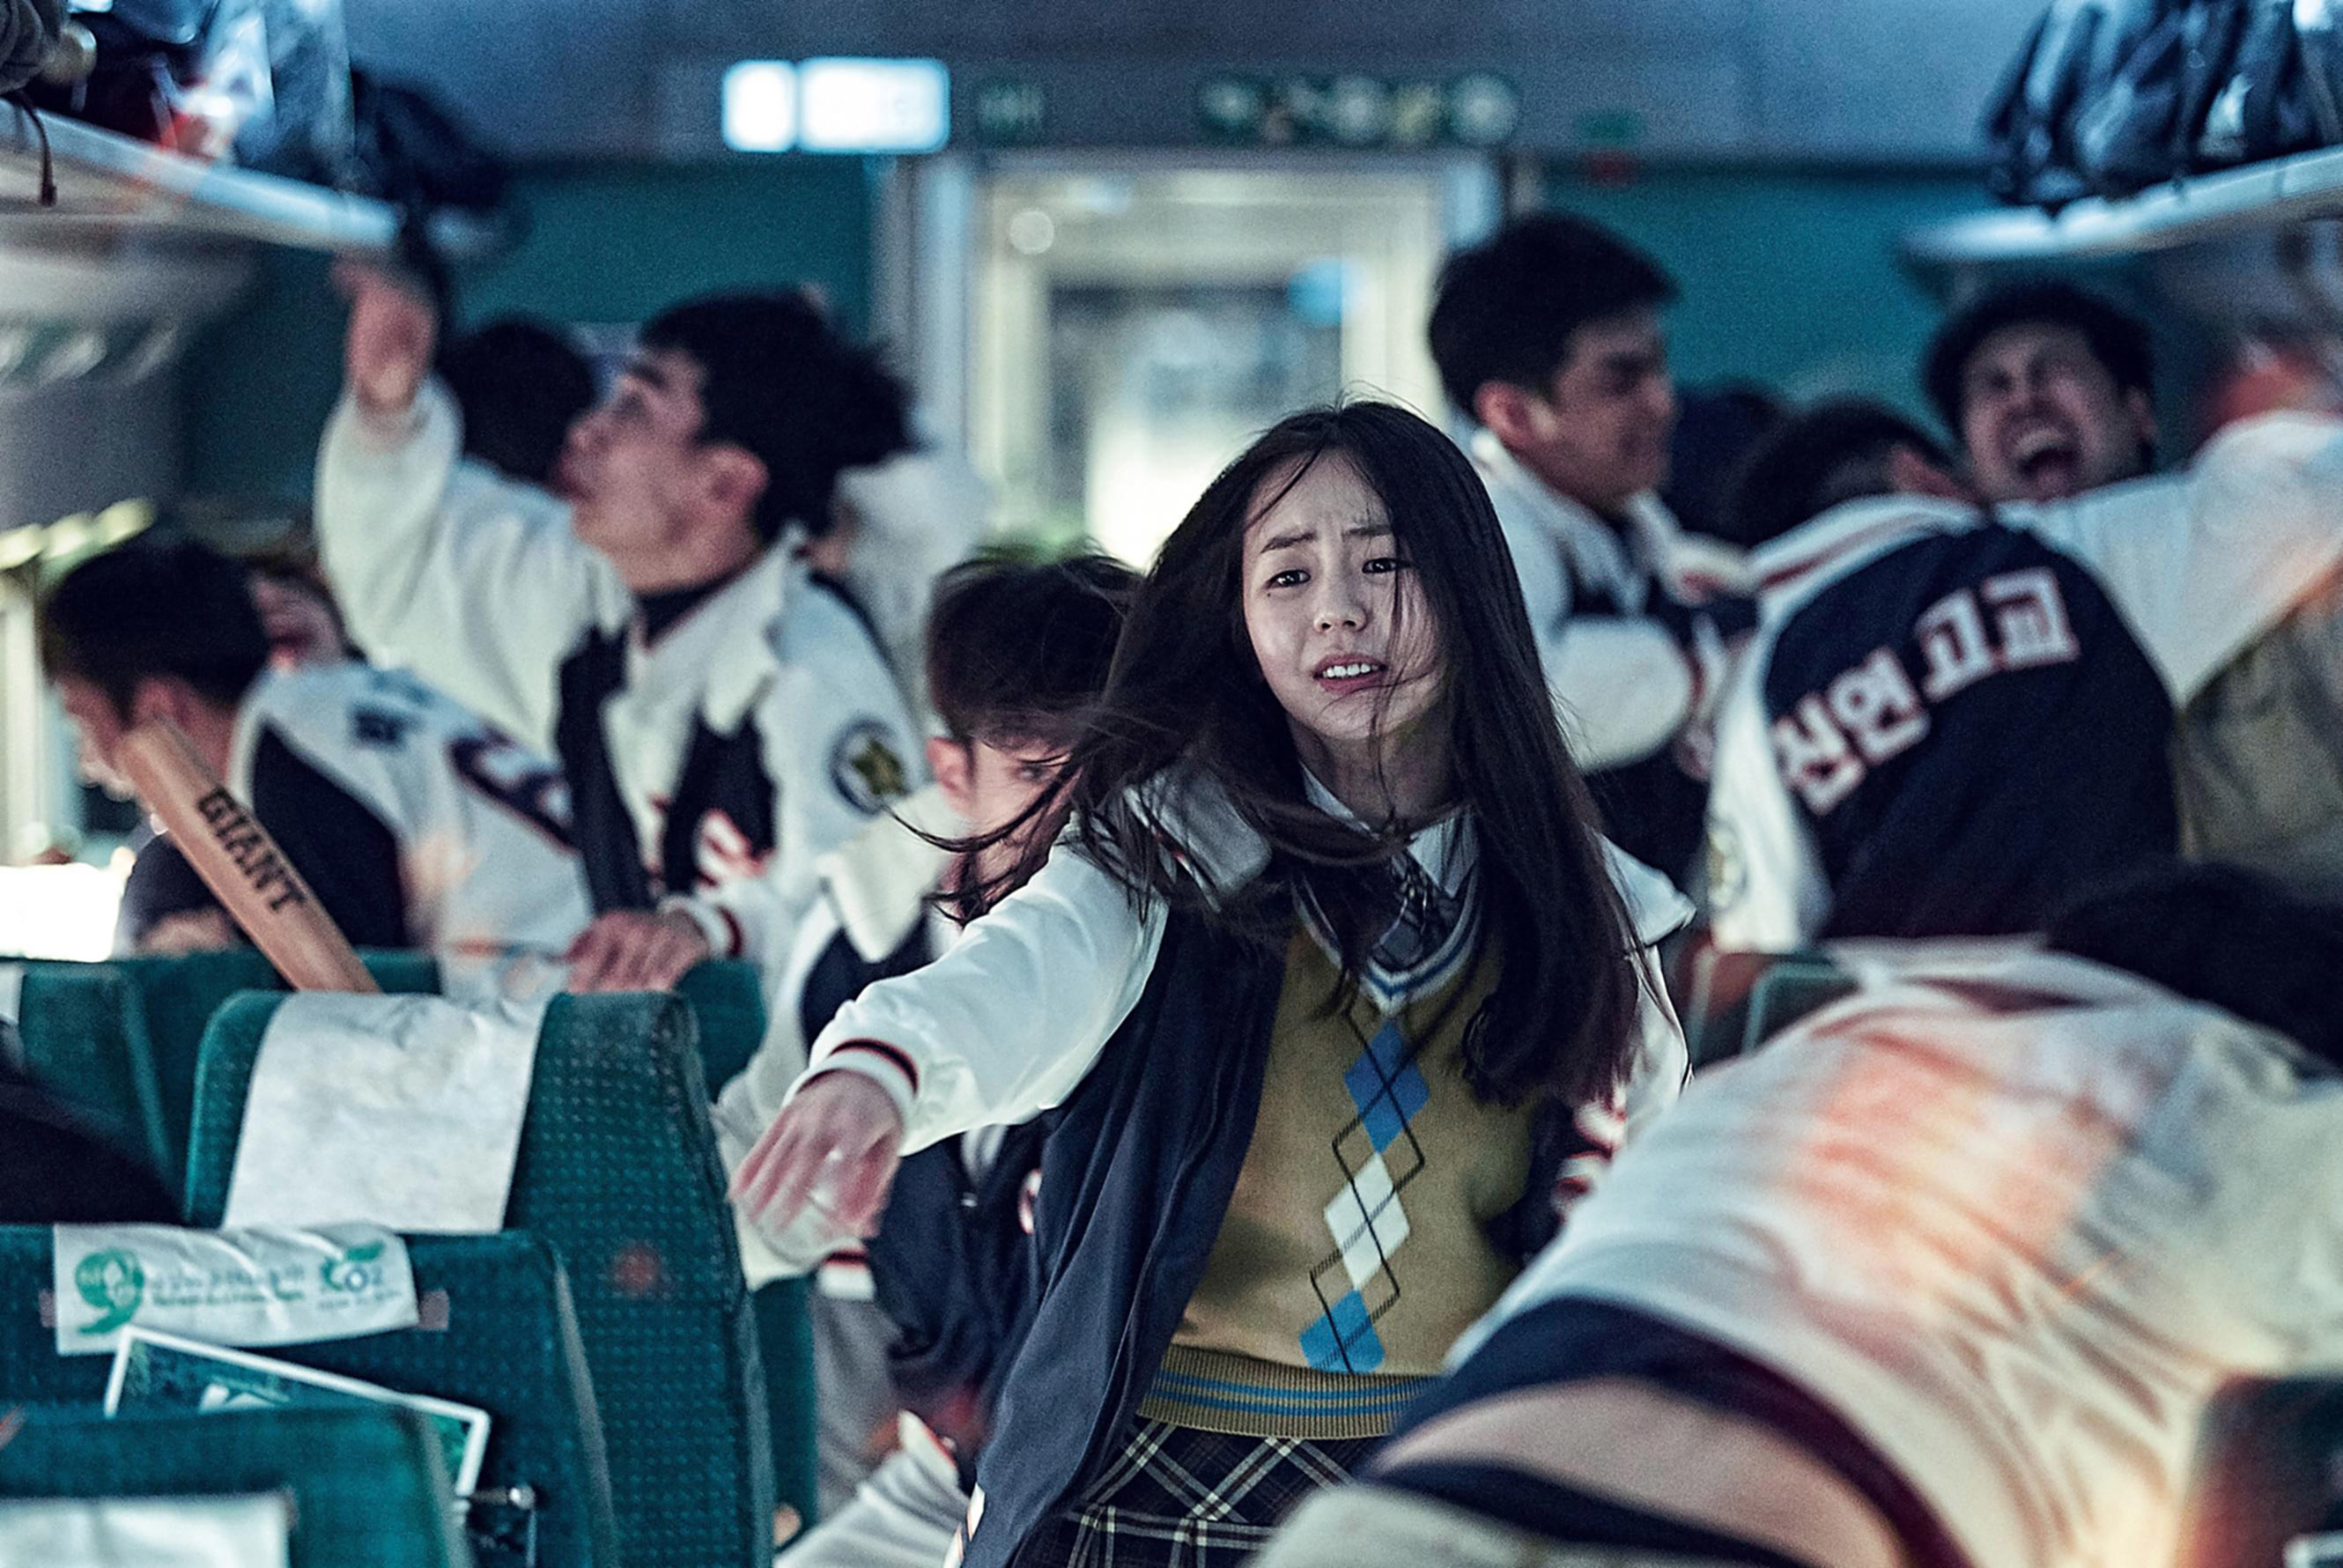 Sohee runs through a crowded train